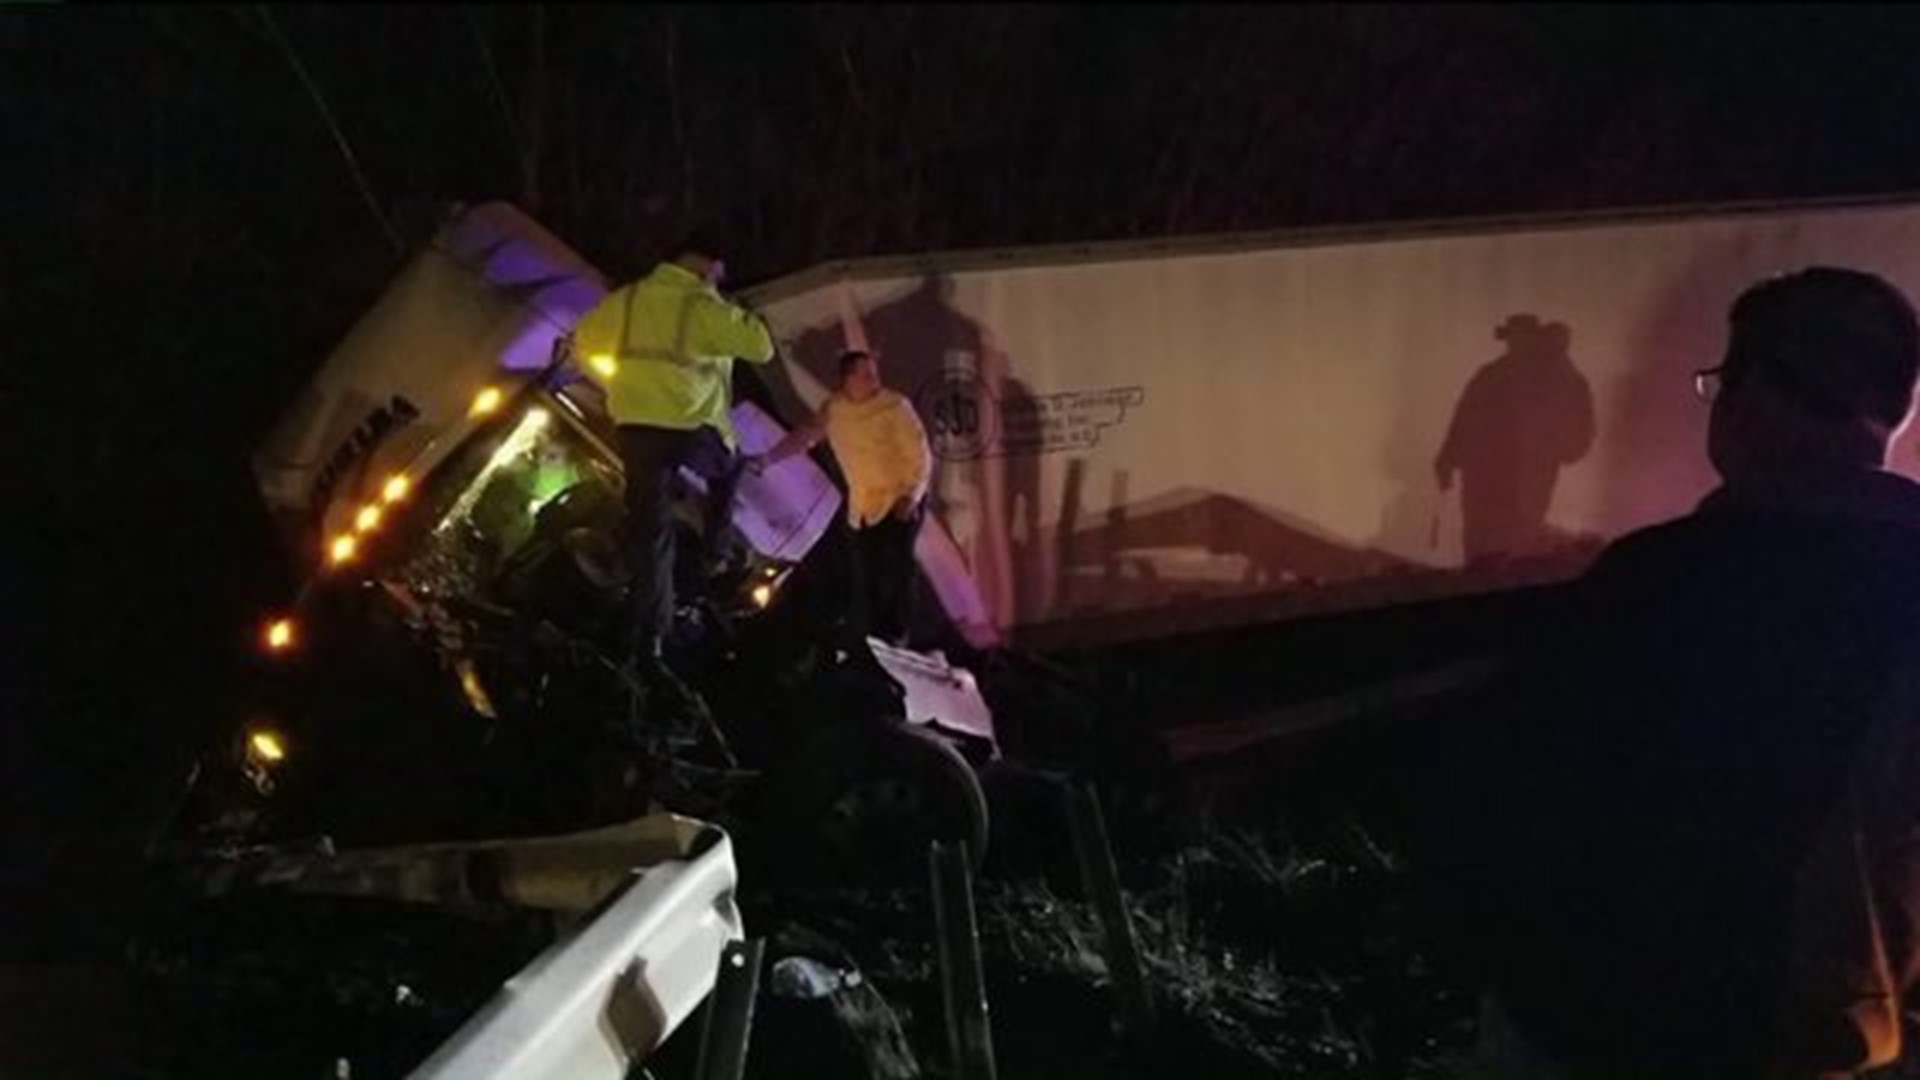 Update: One Lane Closed After Crash on I-81 near Hazleton